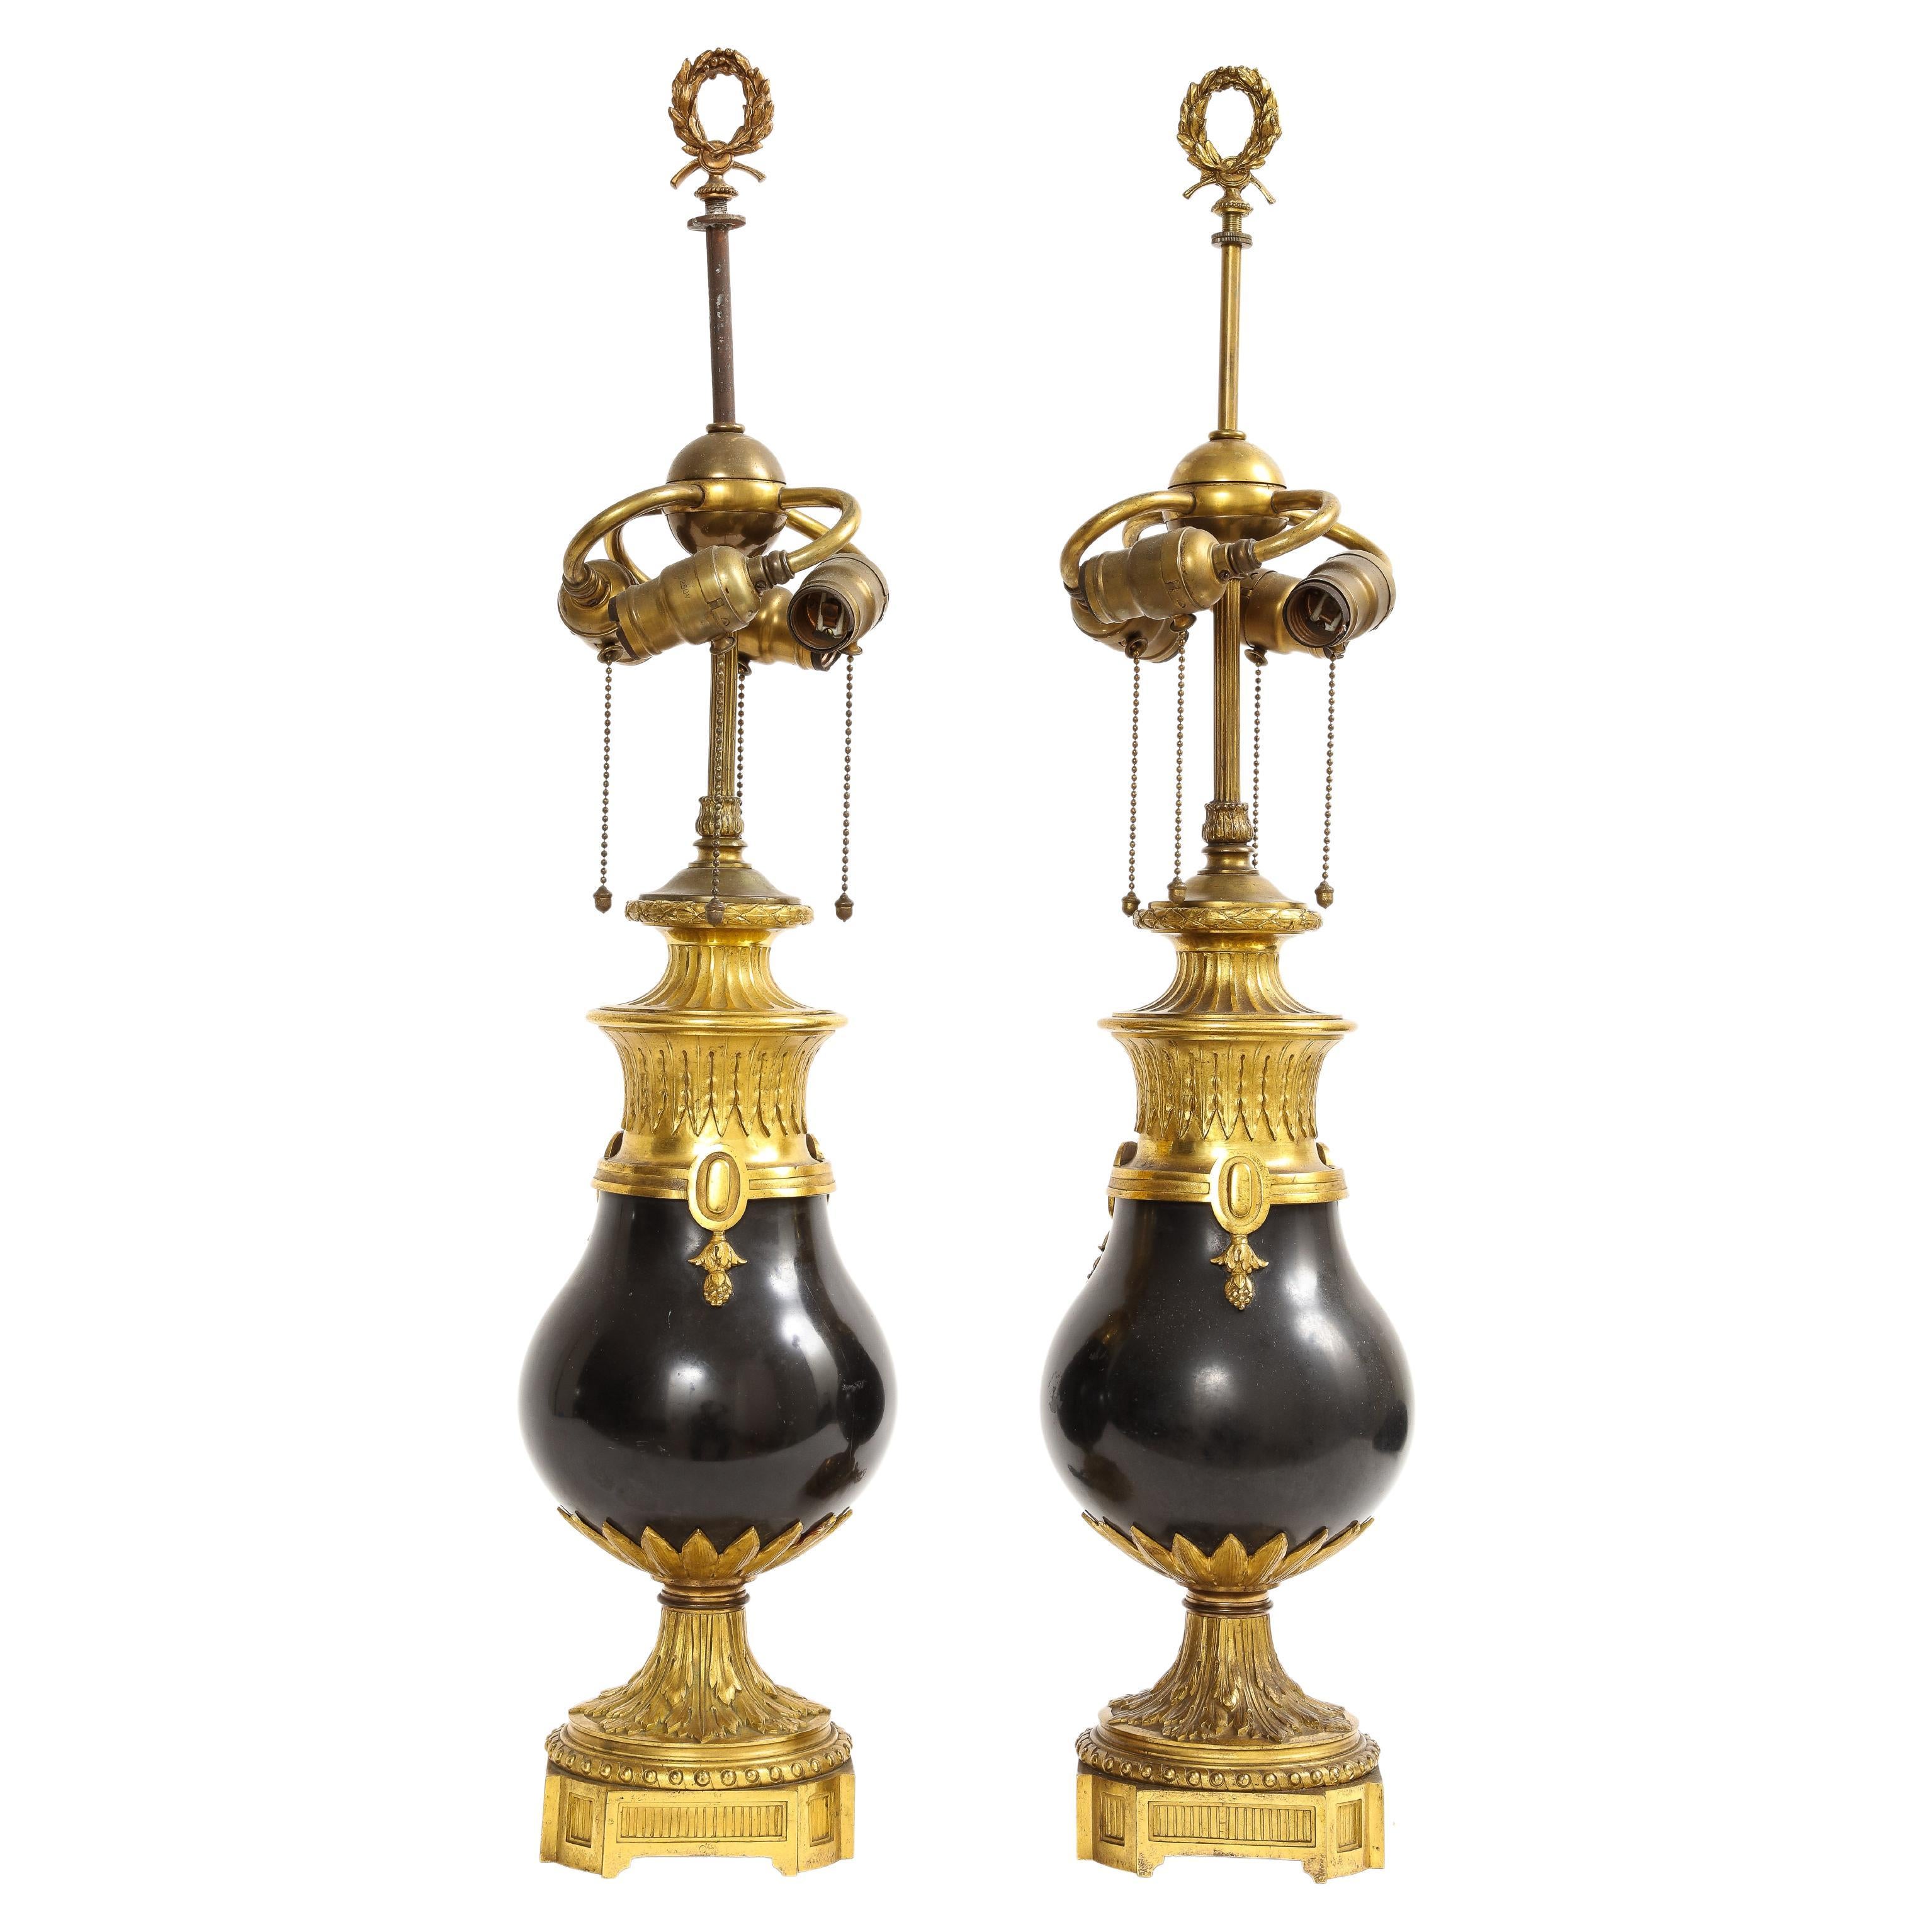 Lampes Caldwell montées sur marbre noir et bronze doré, années 1800